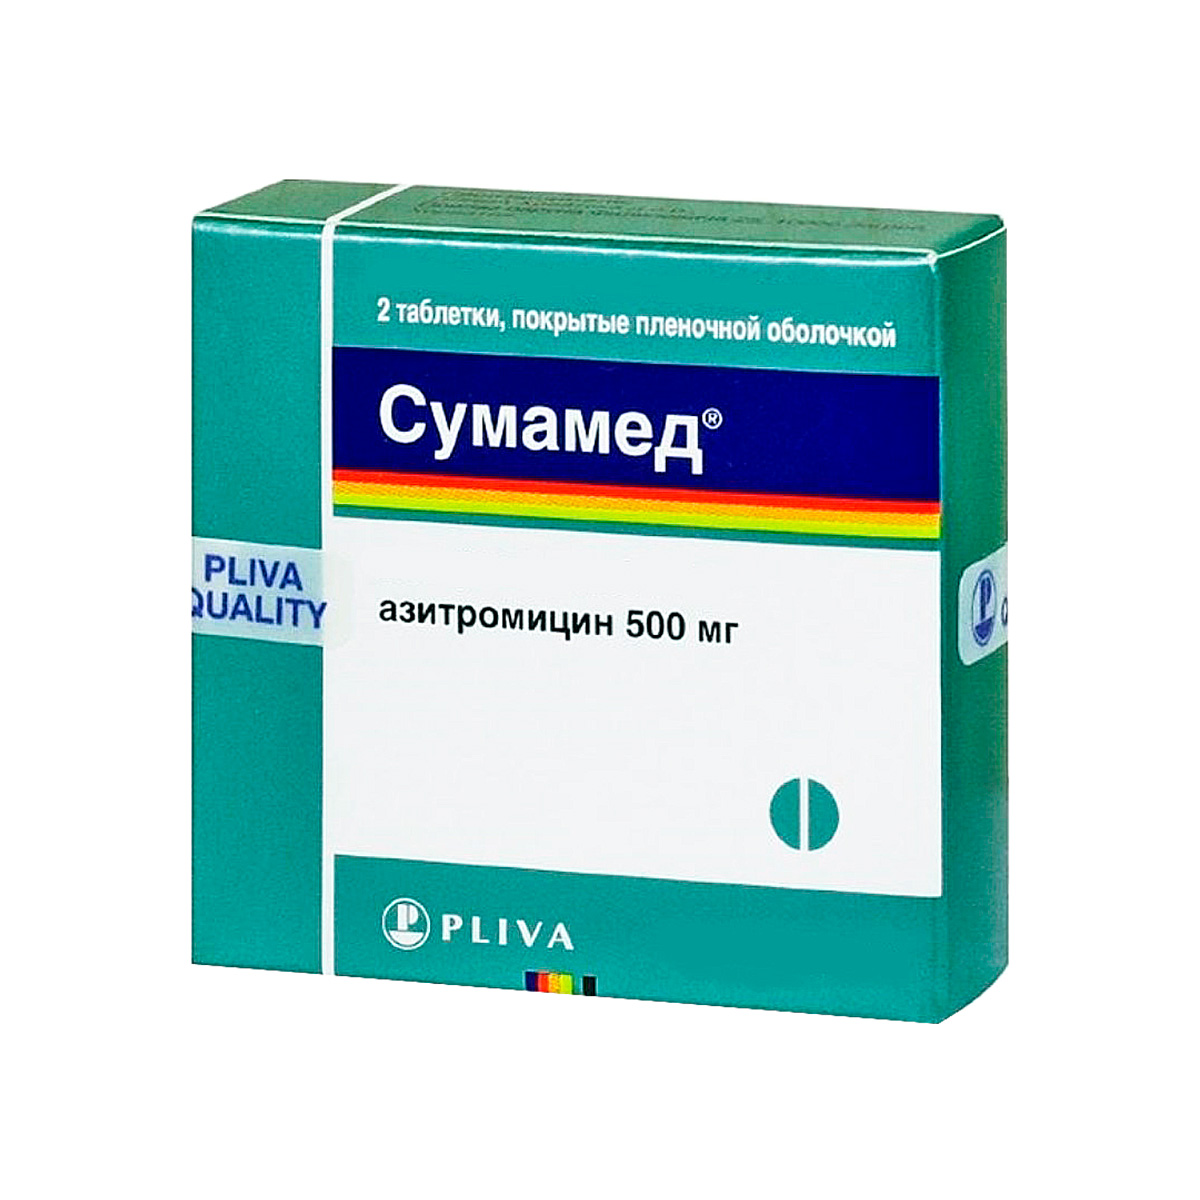 Сумамед 500 мг таблетки покрытые пленочной оболочкой 2 шт